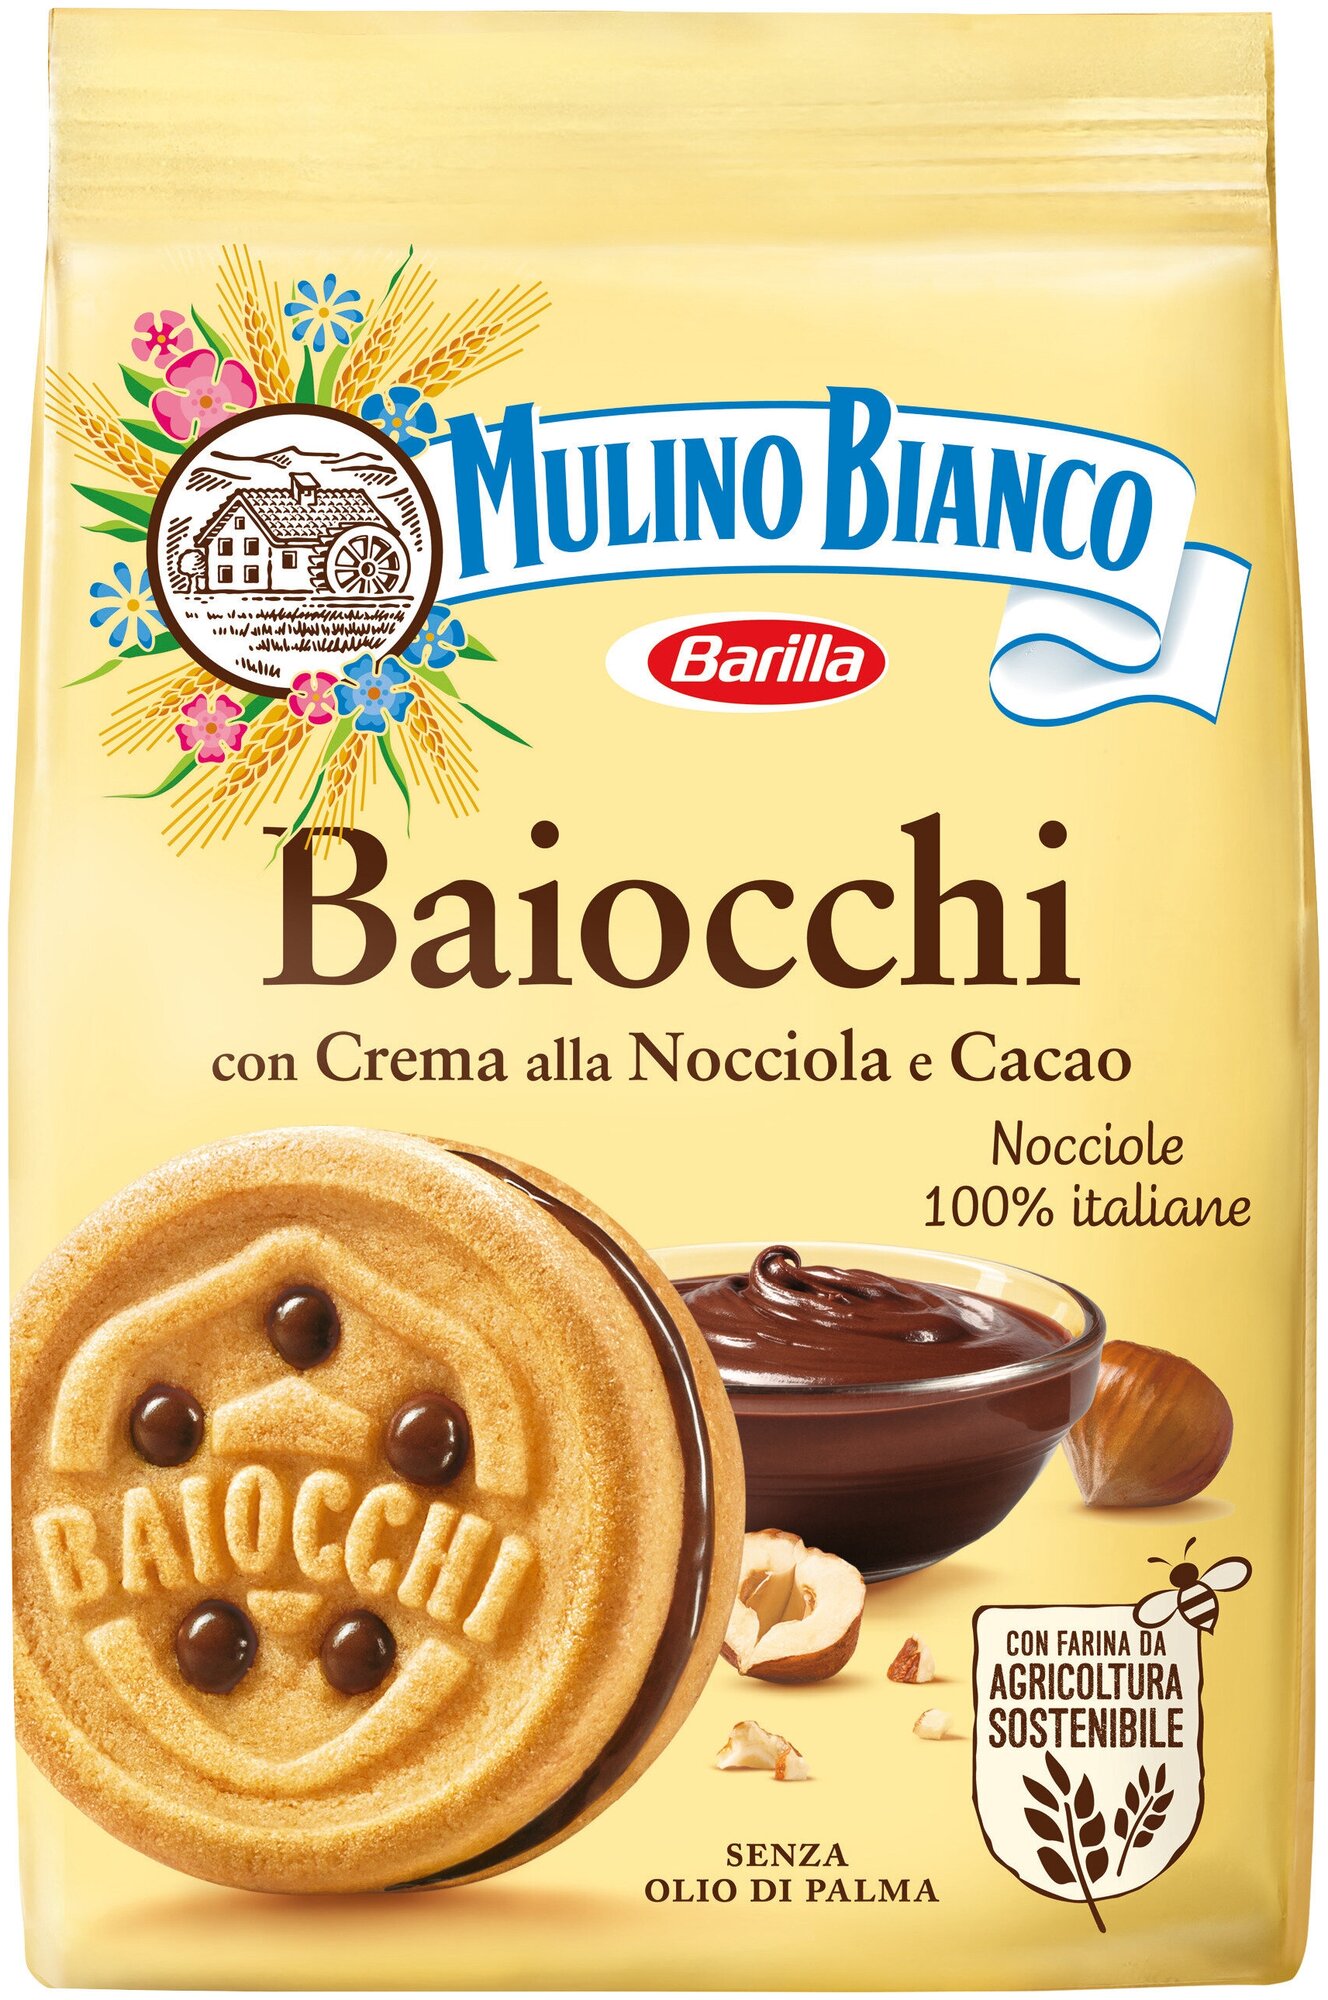 Печенье Mulino Bianco Barilla Baiocchi с какао-ореховым кремом 260г